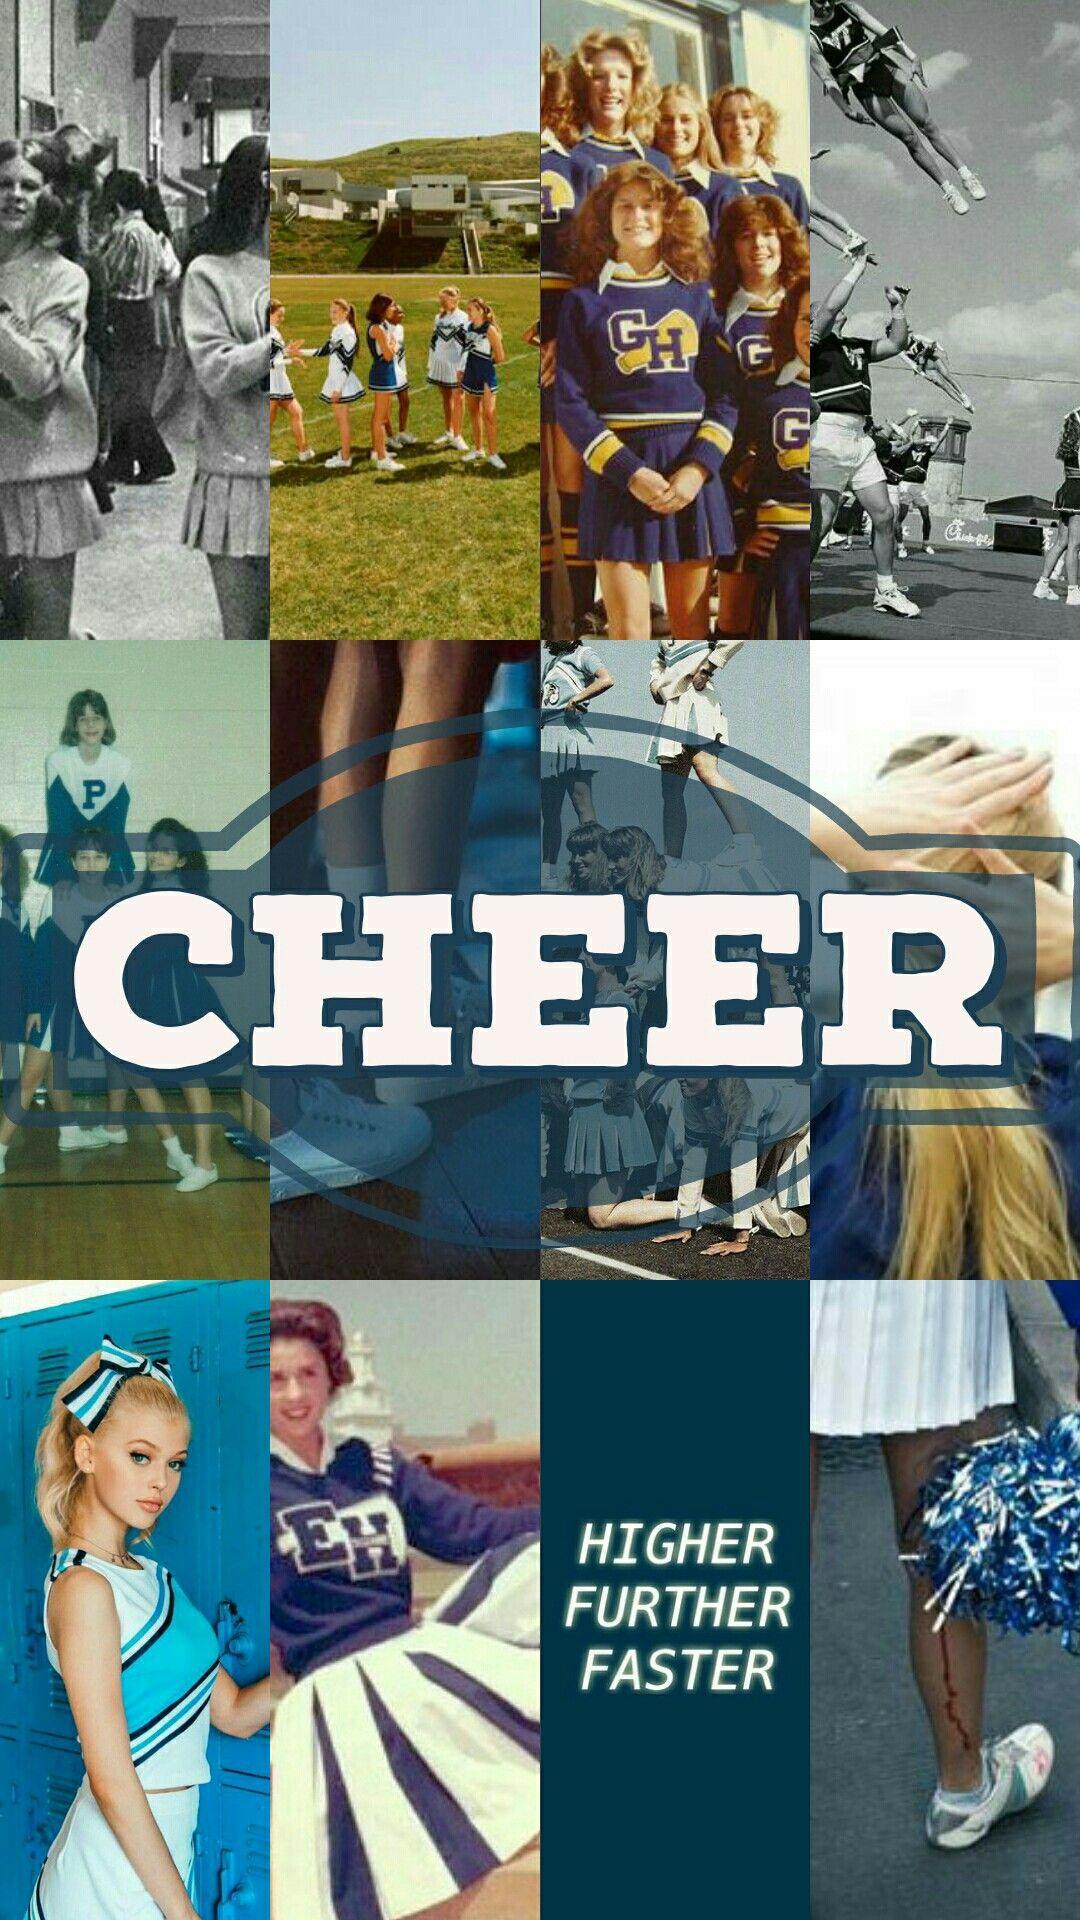 Cheerleader Lockscreen ○ Wallpaper ○ Blue Aesthetic. Cheer picture, Cheers aesthetic wallpaper, Cheerleading